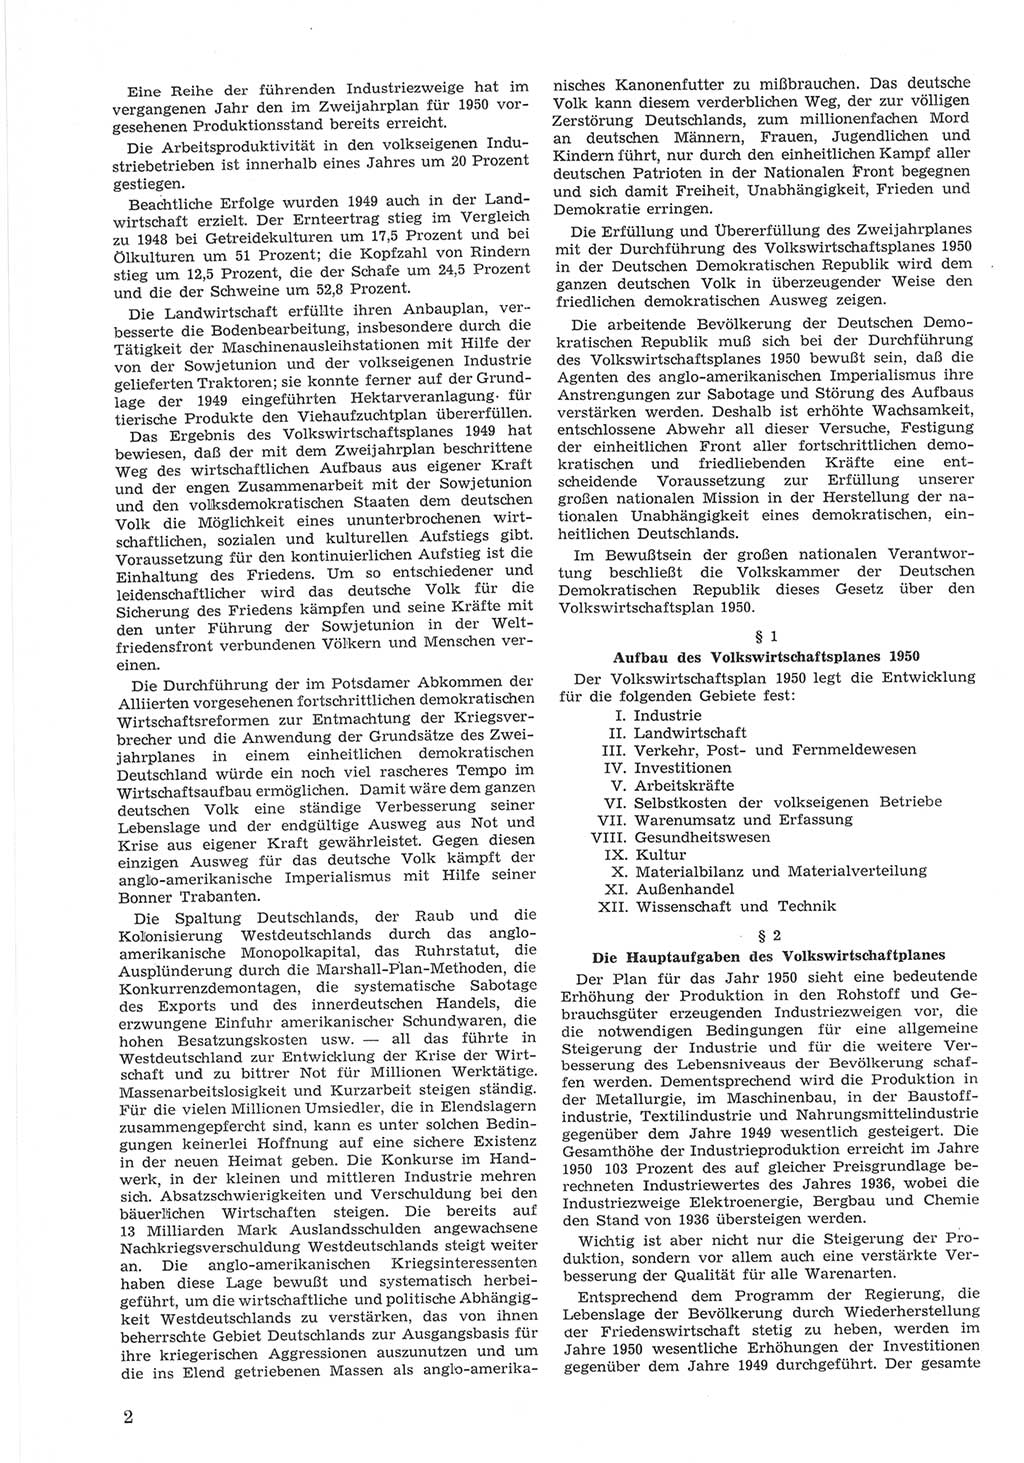 Provisorische Volkskammer (VK) der Deutschen Demokratischen Republik (DDR) 1949-1950, Dokument 602 (Prov. VK DDR 1949-1950, Dok. 602)